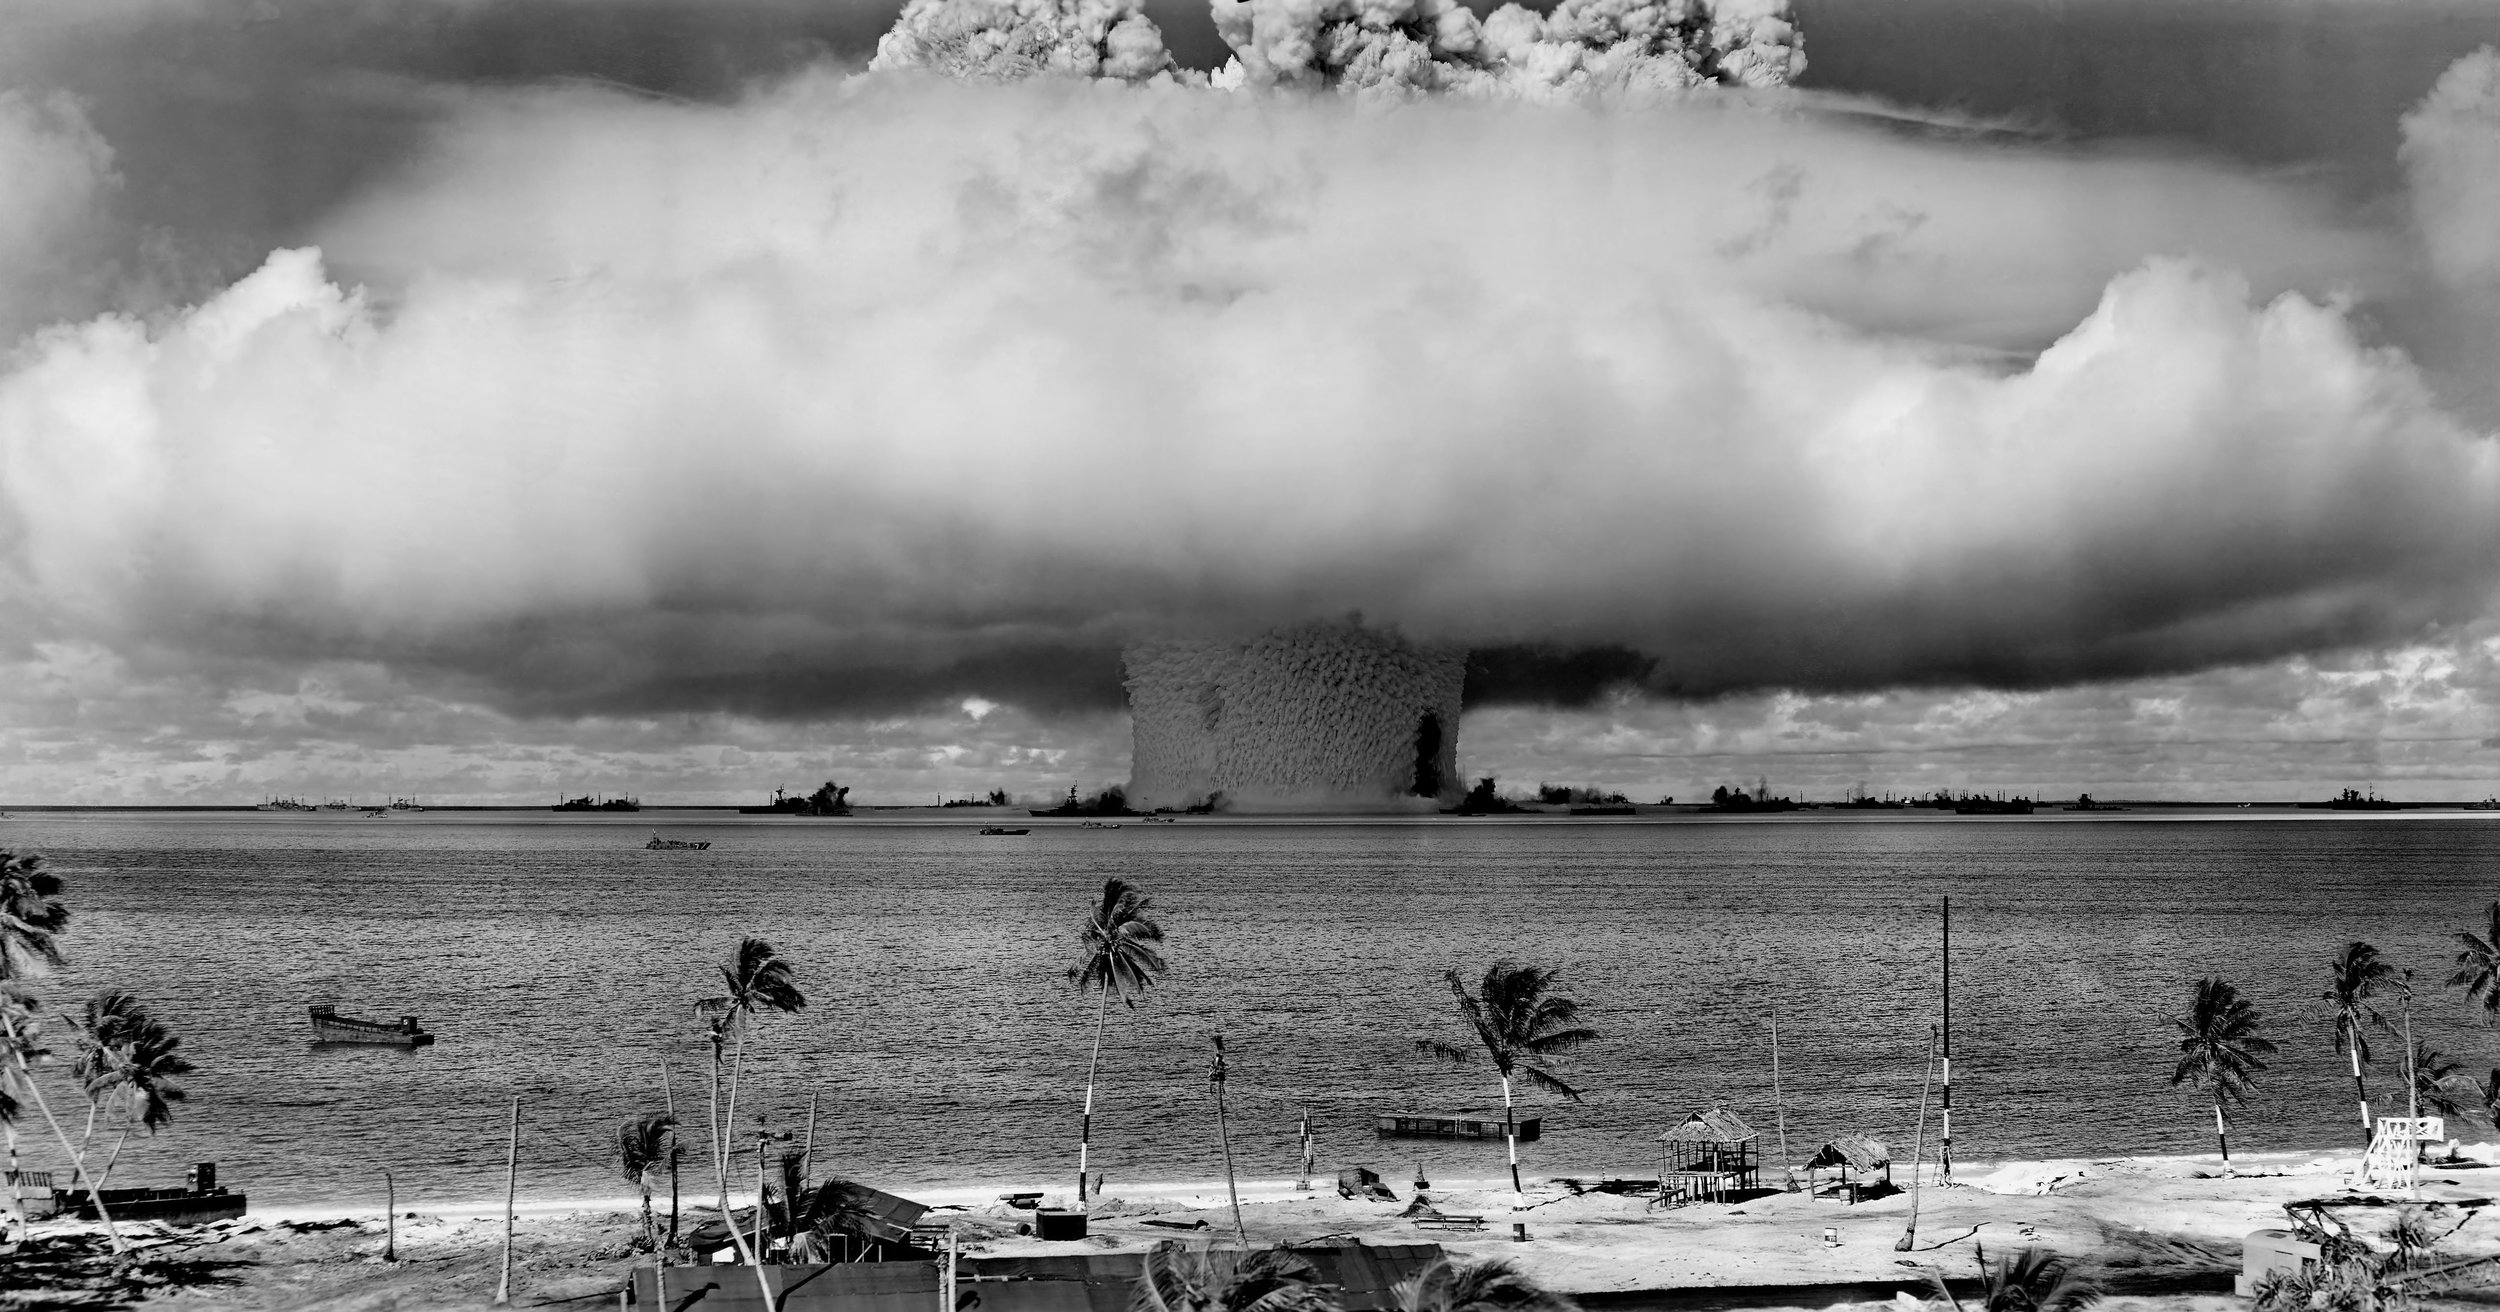 Nuclear &amp; Chemical War